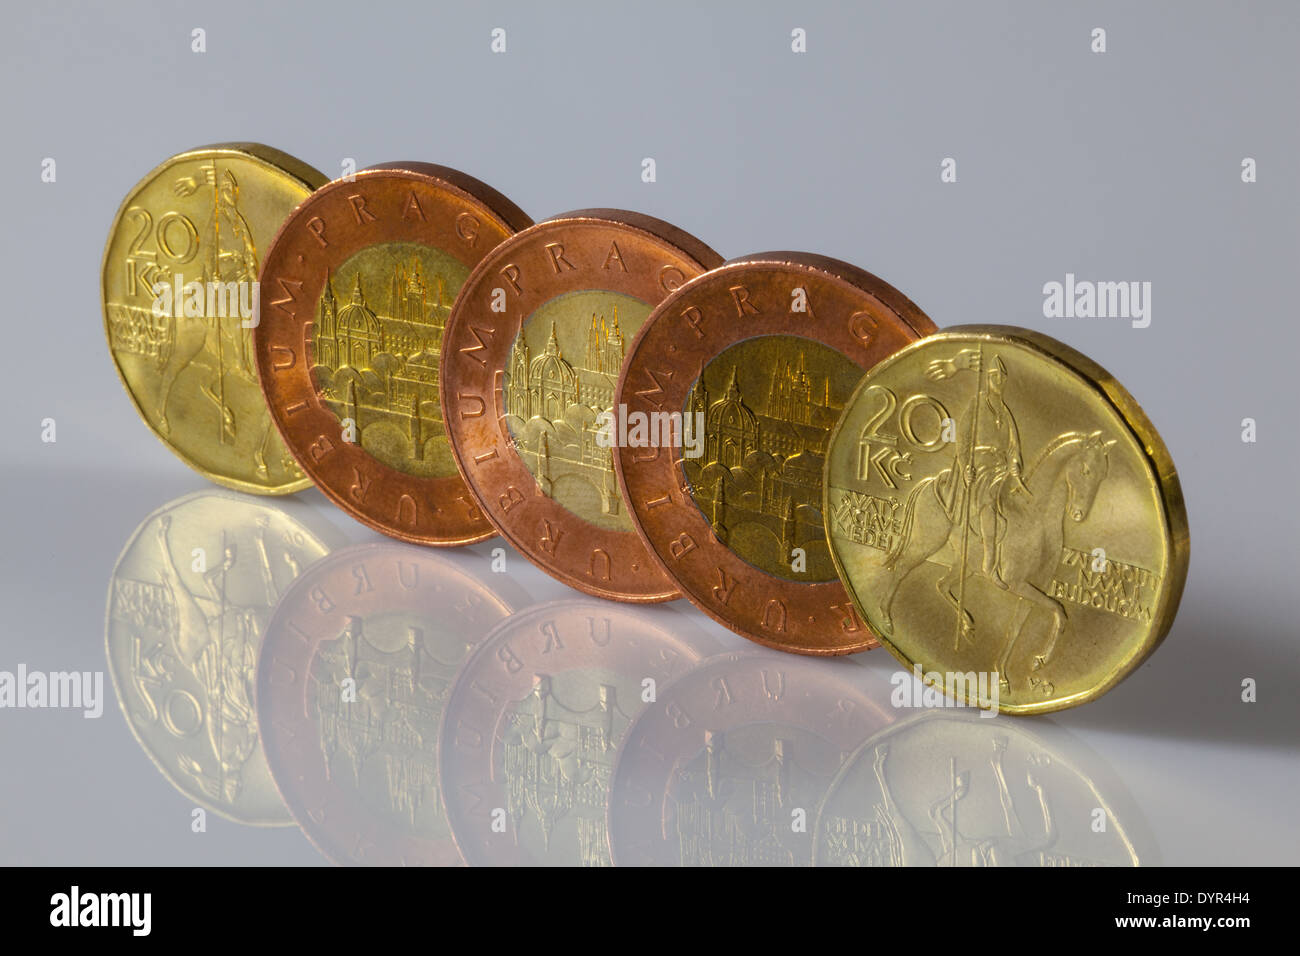 Monedas checas de pie en el mostrador de cristal Foto de stock